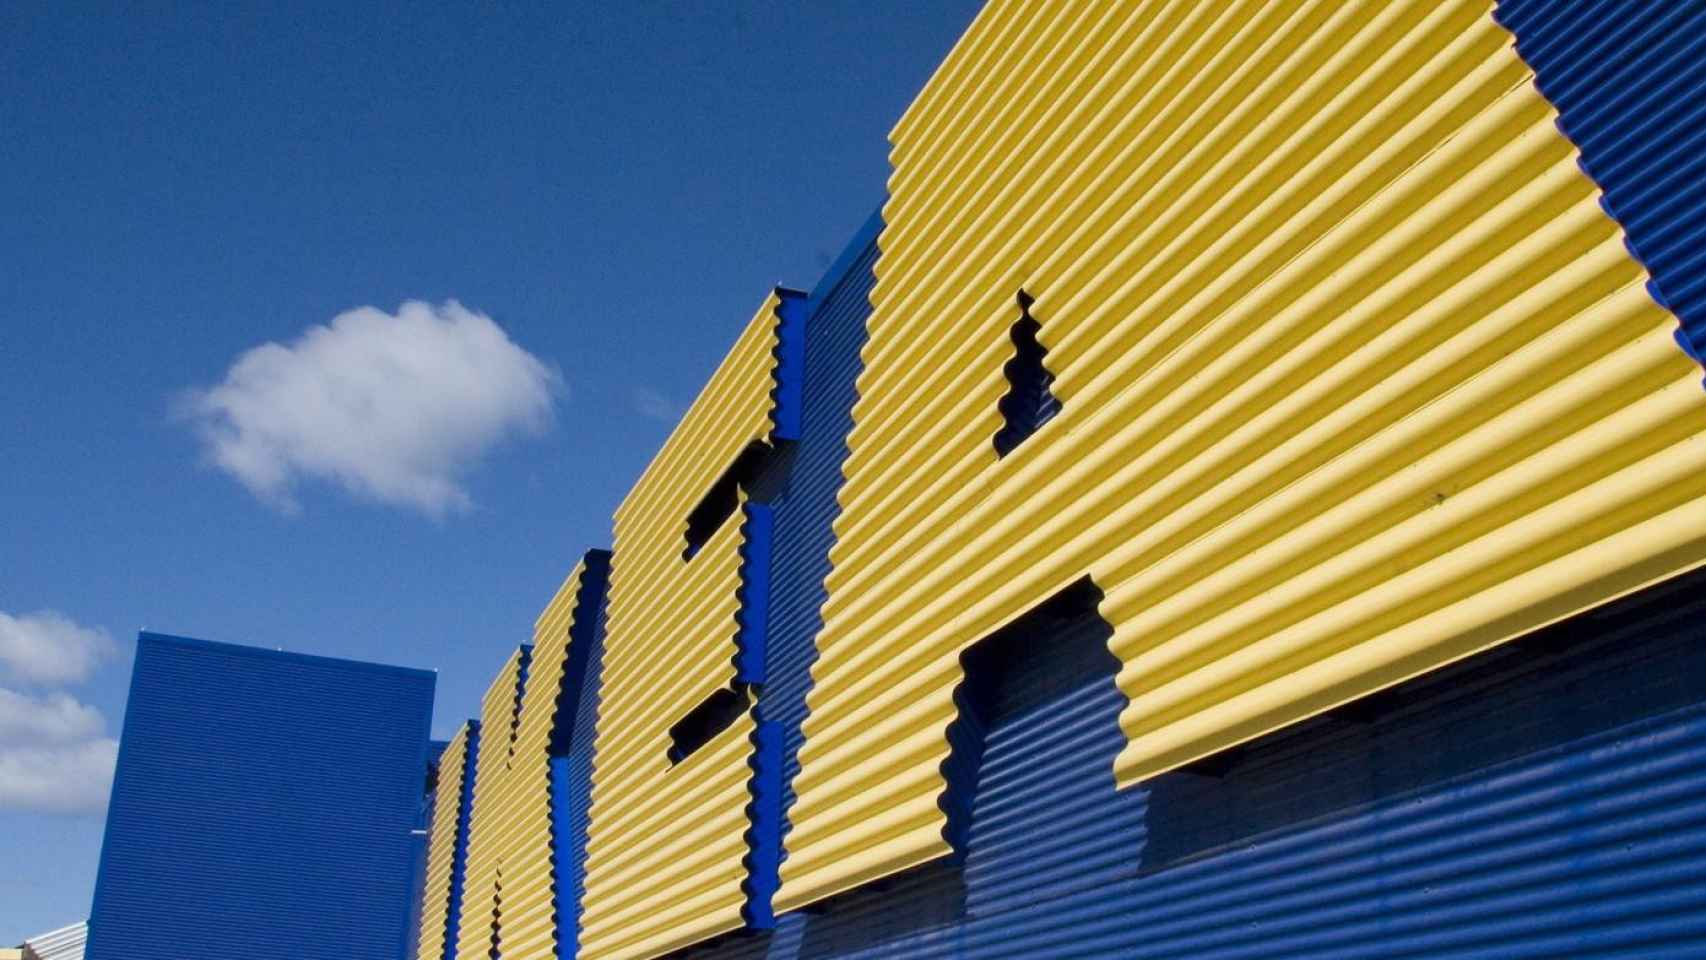 Fachada de uno de los grandes almacenes de Ikea, en los que apuesta por la sostenibilidad / CG